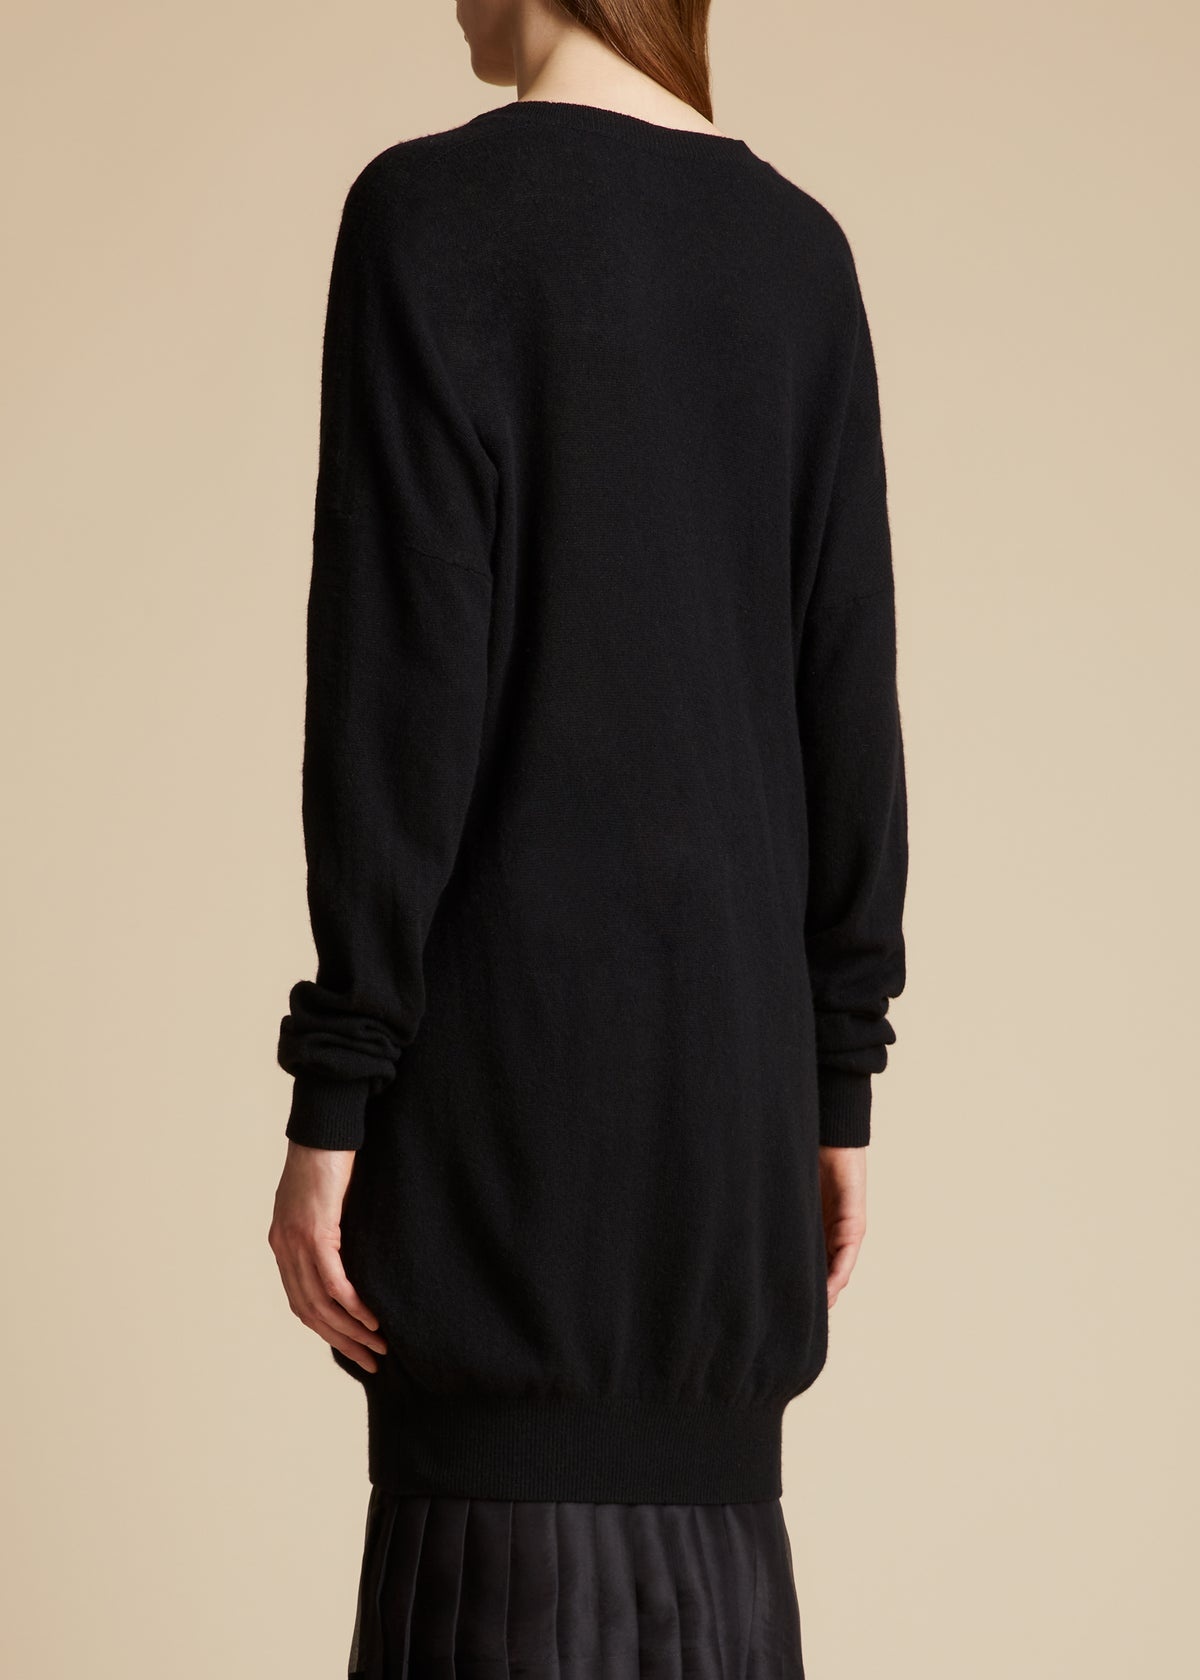 The Marano Sweater in Black - 3